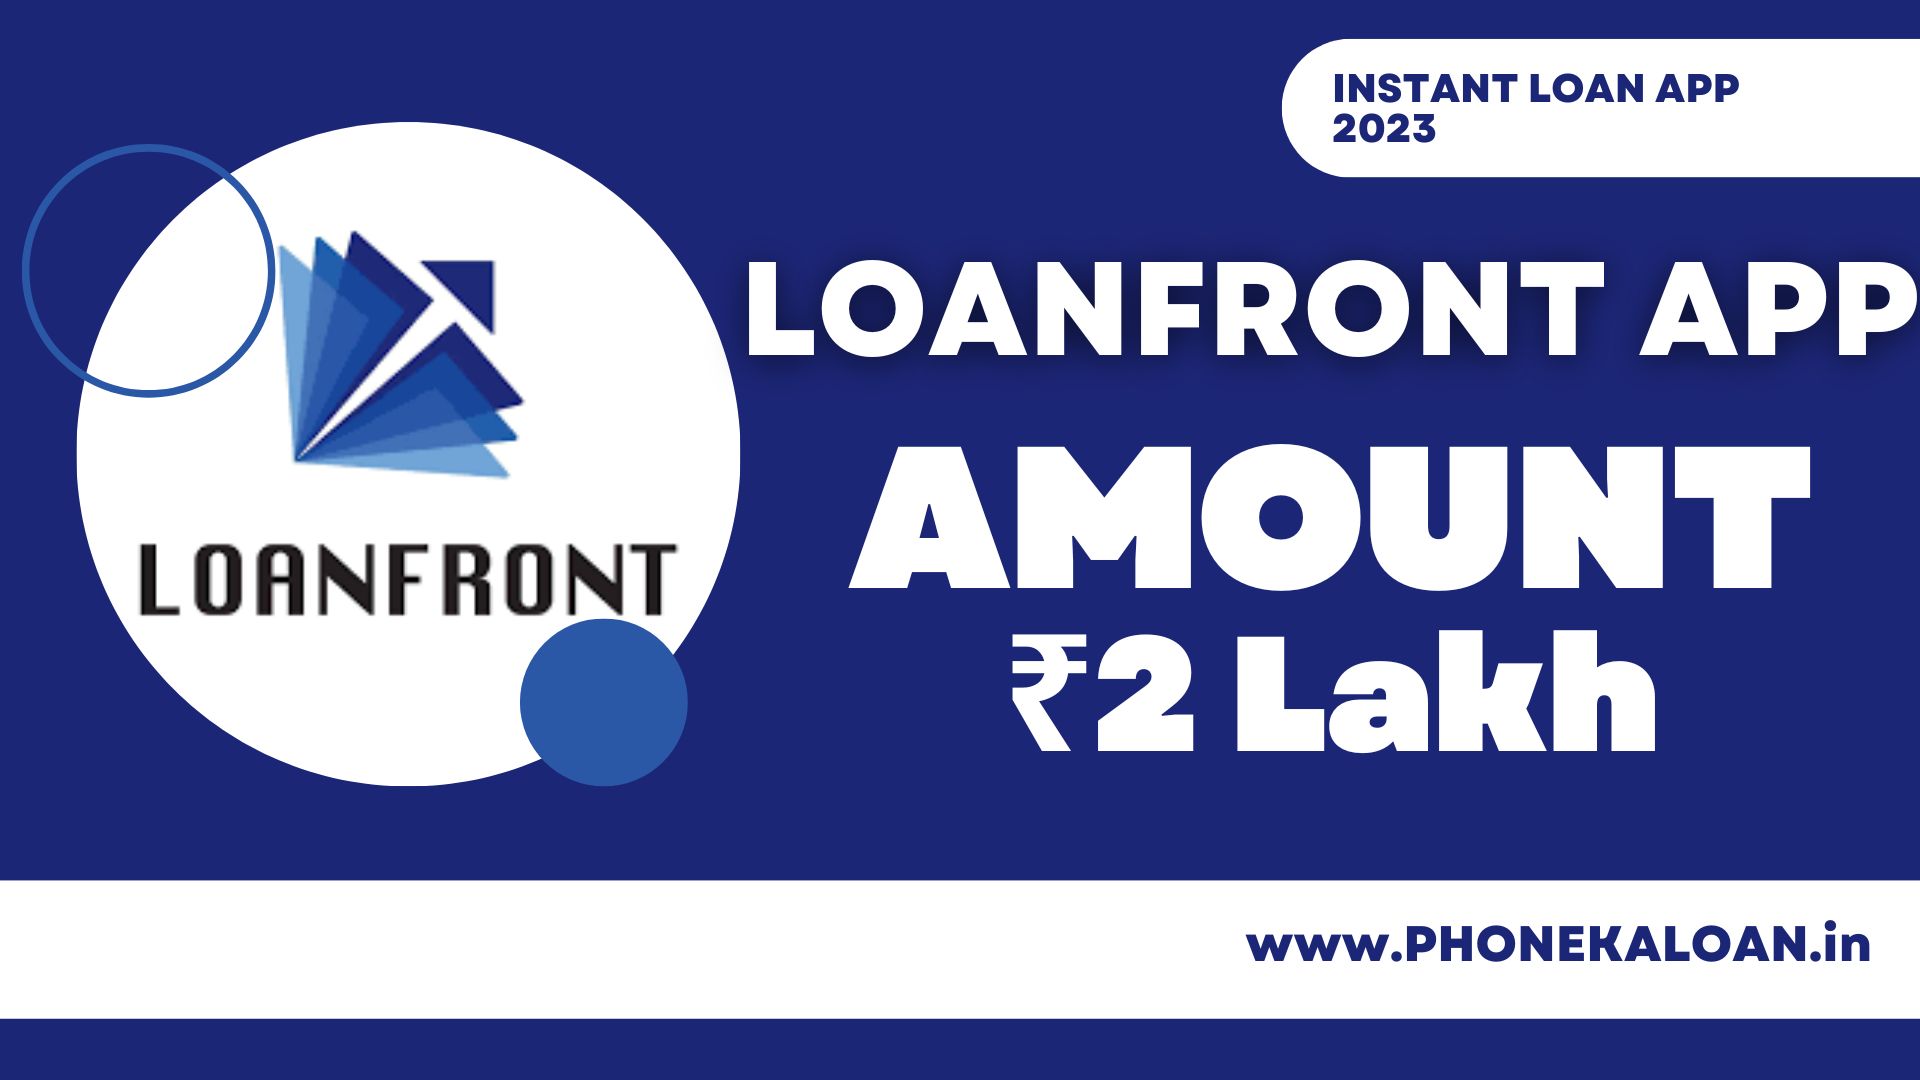 LoanFront Loan App Loan Amount